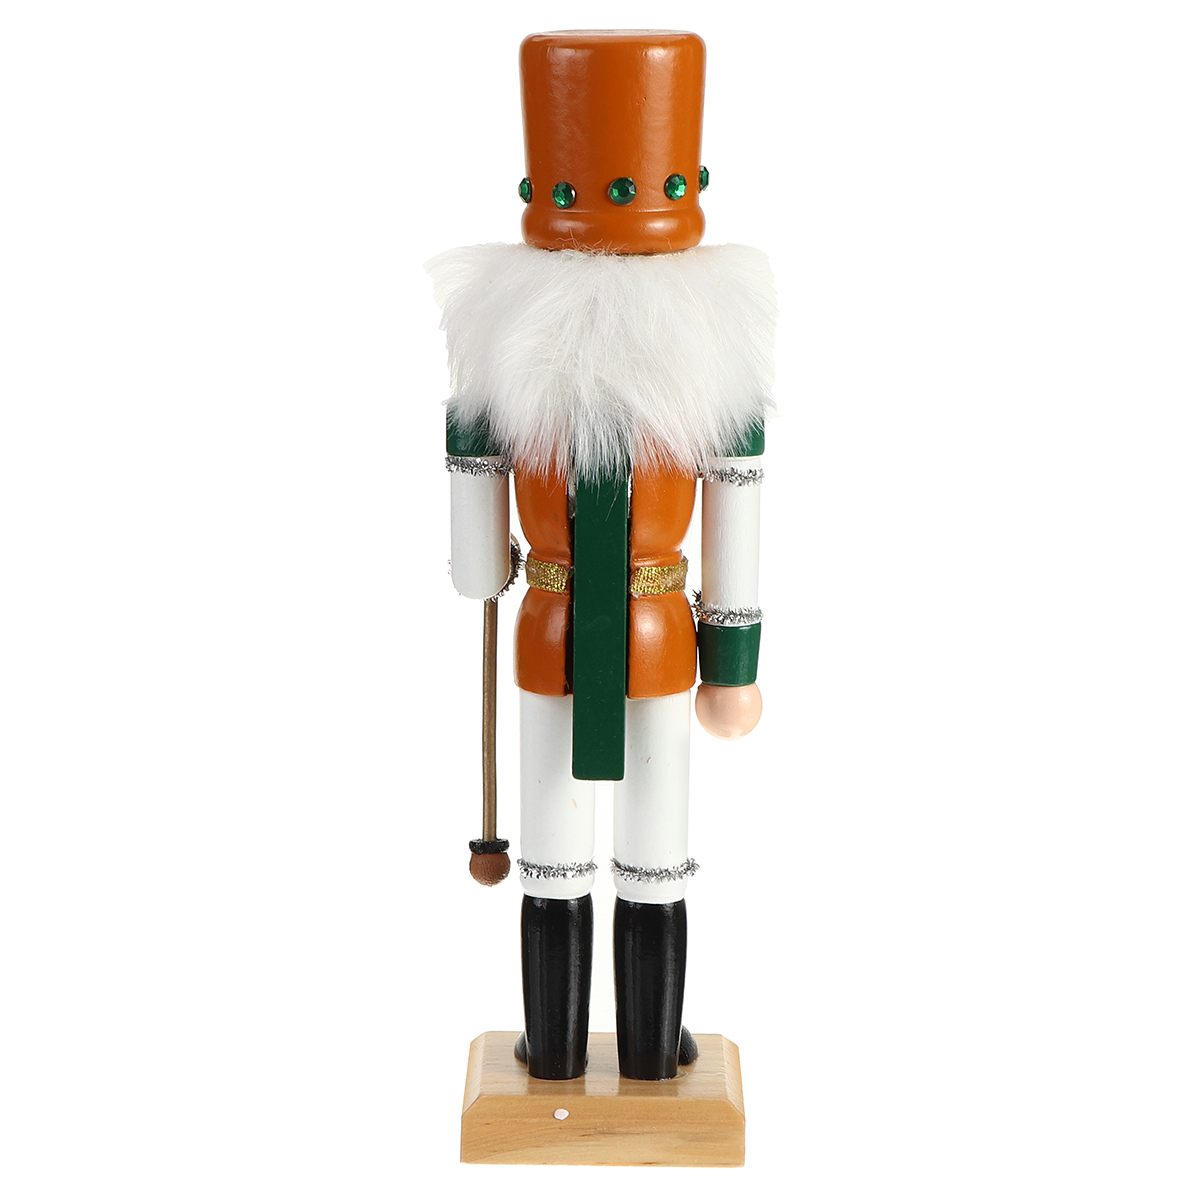 Christmas-Nutcracker-Soldier-Doll--Wooden-Puppet-Vintage-Desktop-Ornaments-25cm-Festival-Decoration-1767883-9